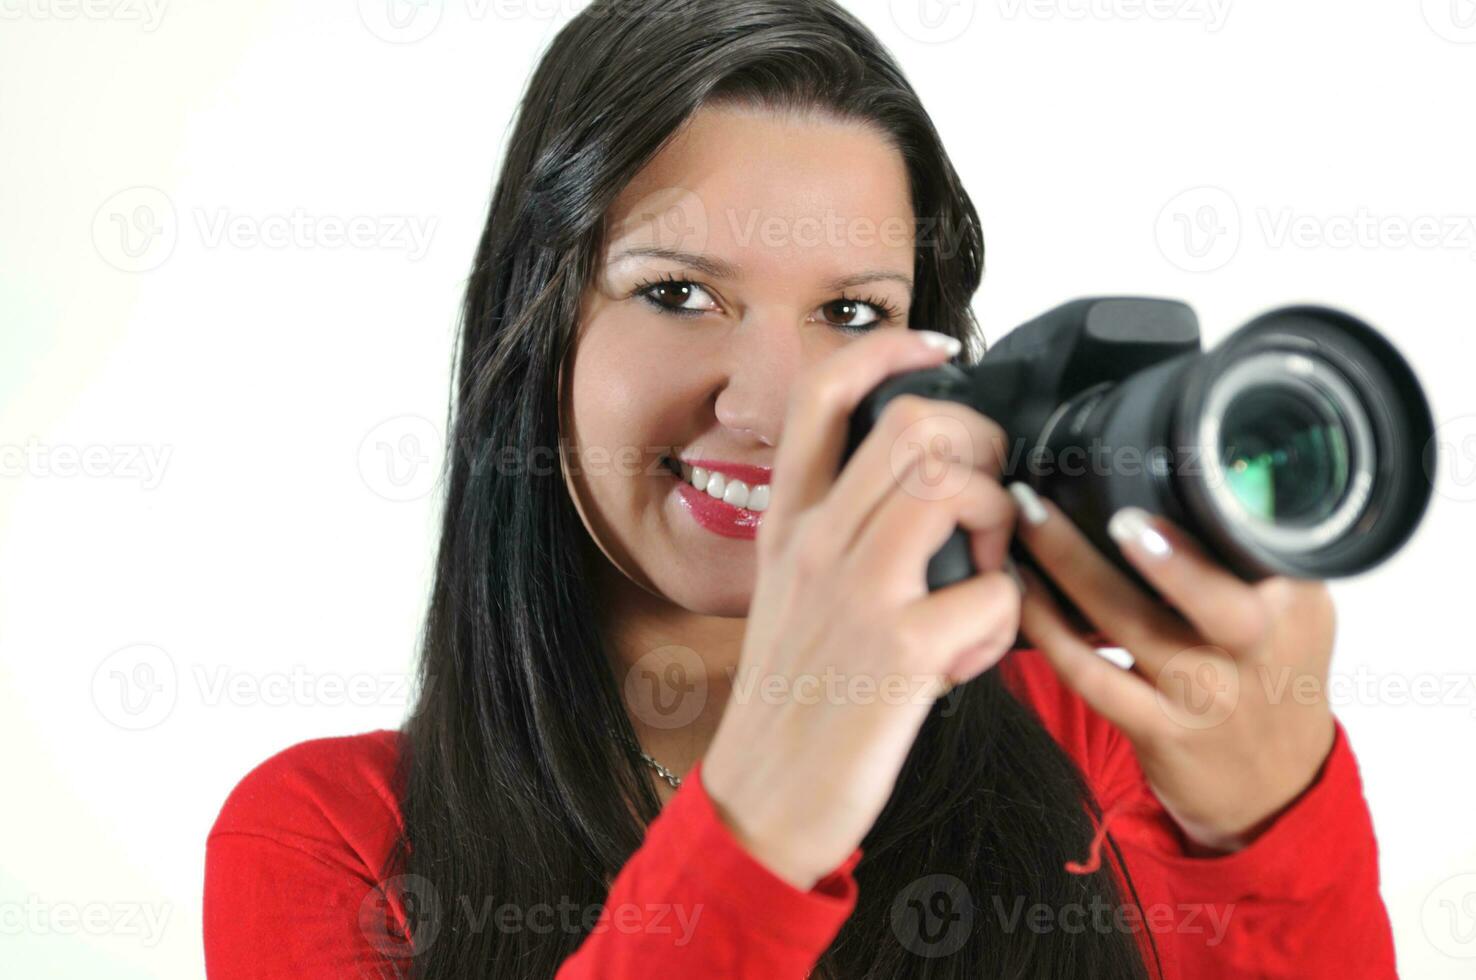 jeune femme tenant un appareil photo à la main prenant une photo isolée